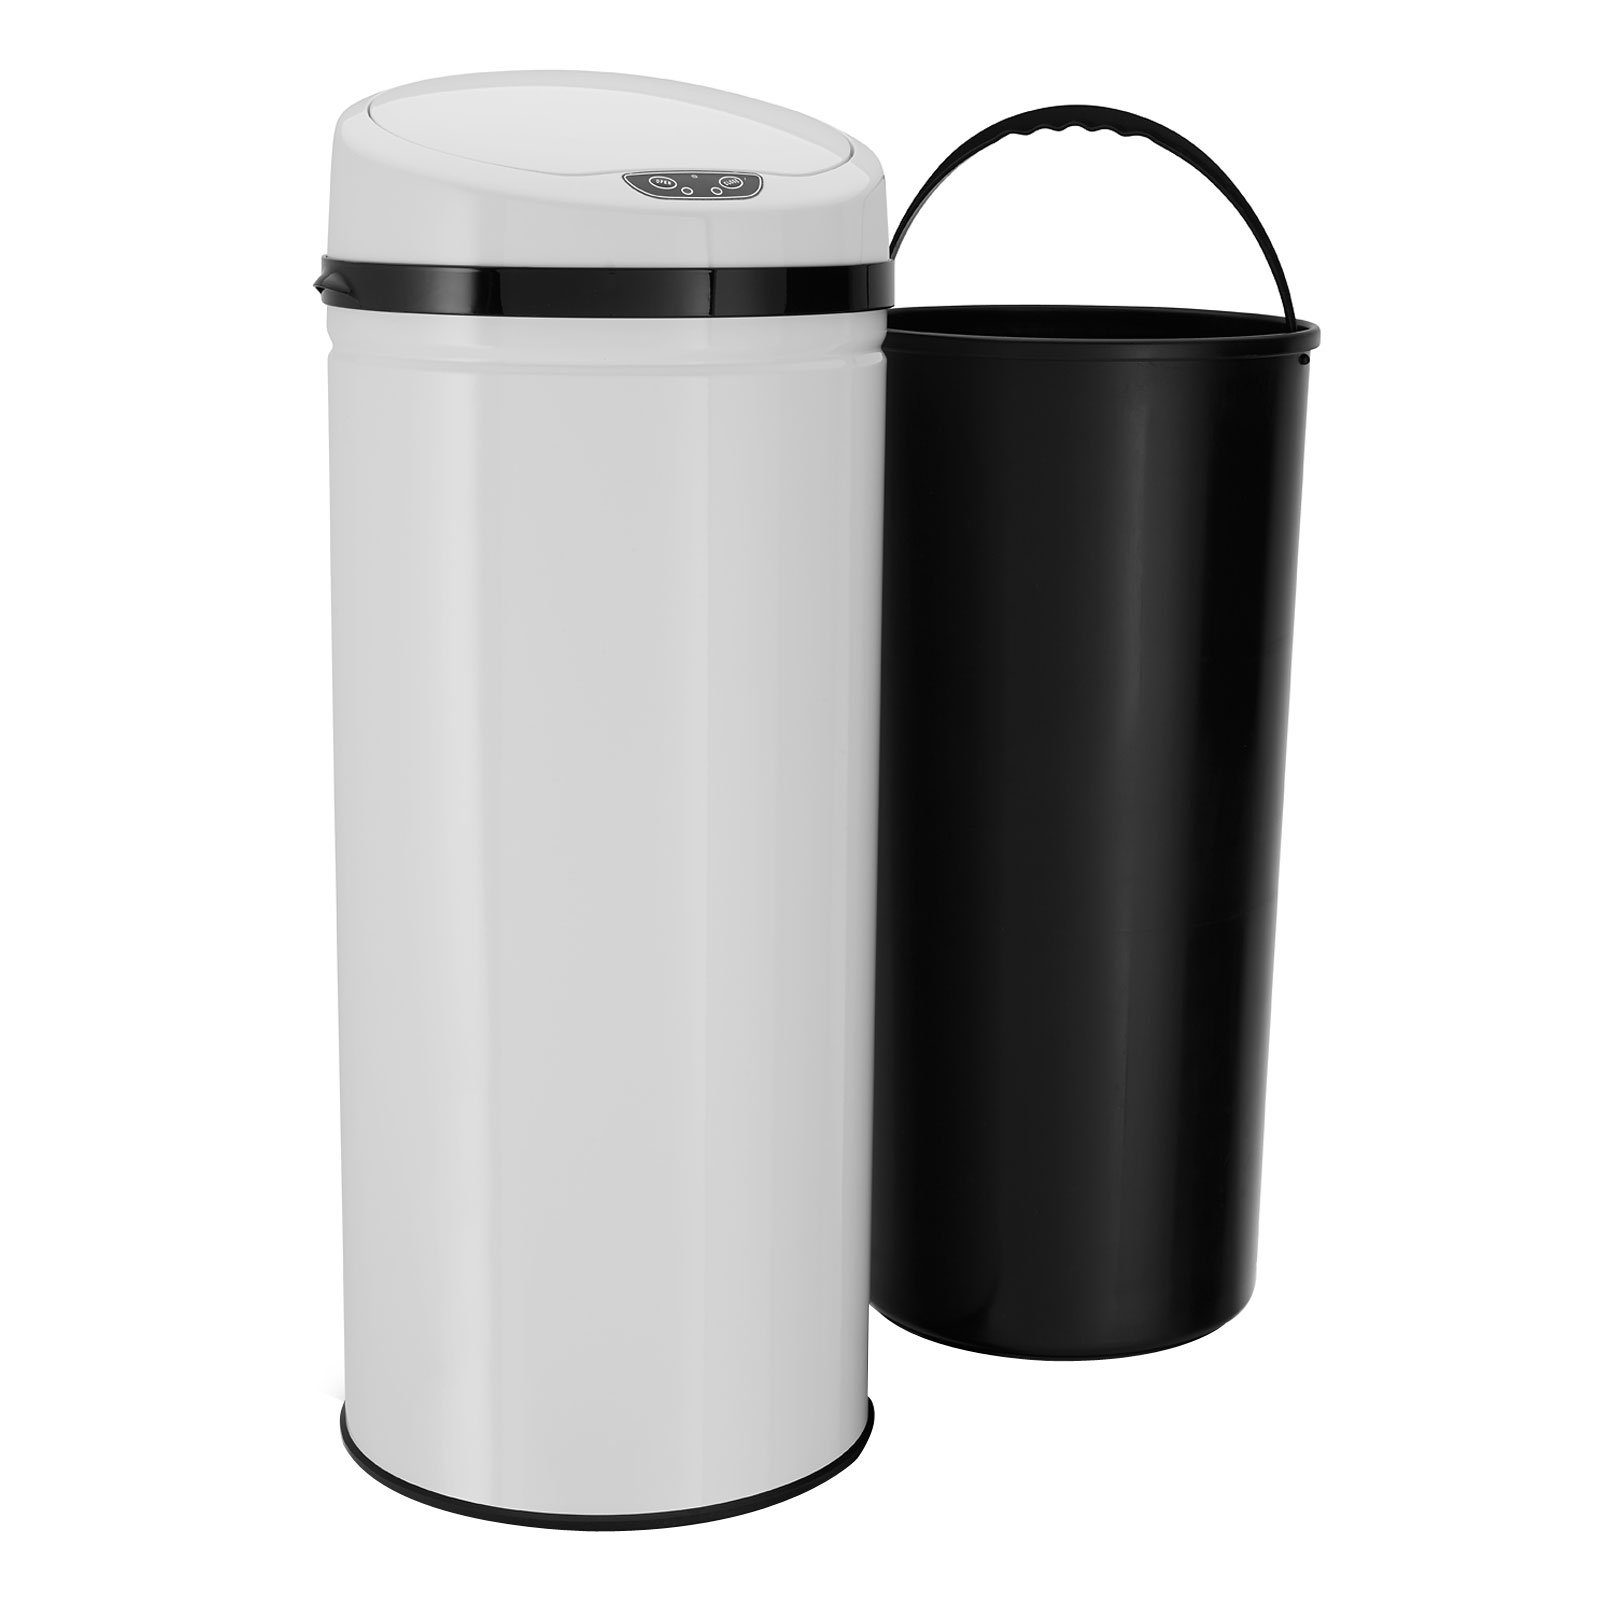 ECHTWERK Mülleimer INOX WHITE, Infrarot-Sensor, Korpus aus Edelstahl,  Fassungsvermögen 42 Liter, Plastikring zur Fixierung des Müllbeutels